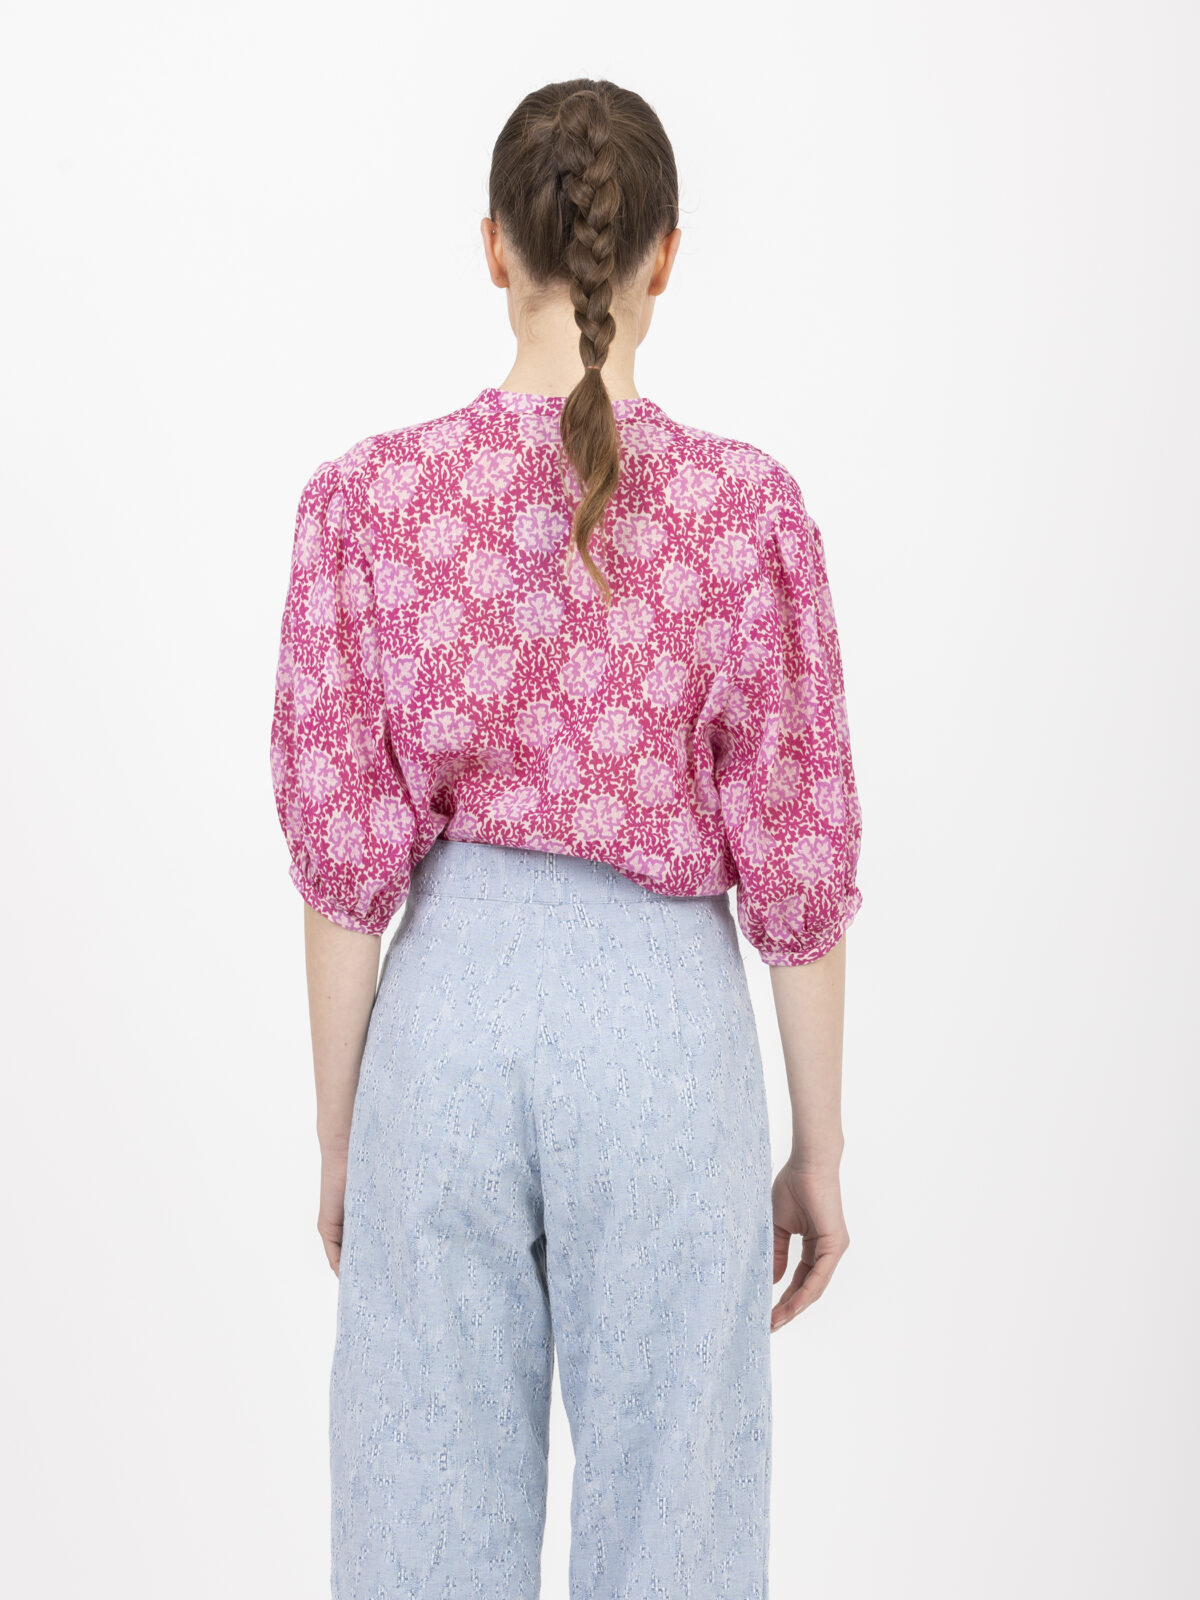 aragon-pink-printed-blouse-puffy-sleeves-cotton-round-neckline-vanessa-bruno-matchboxathens